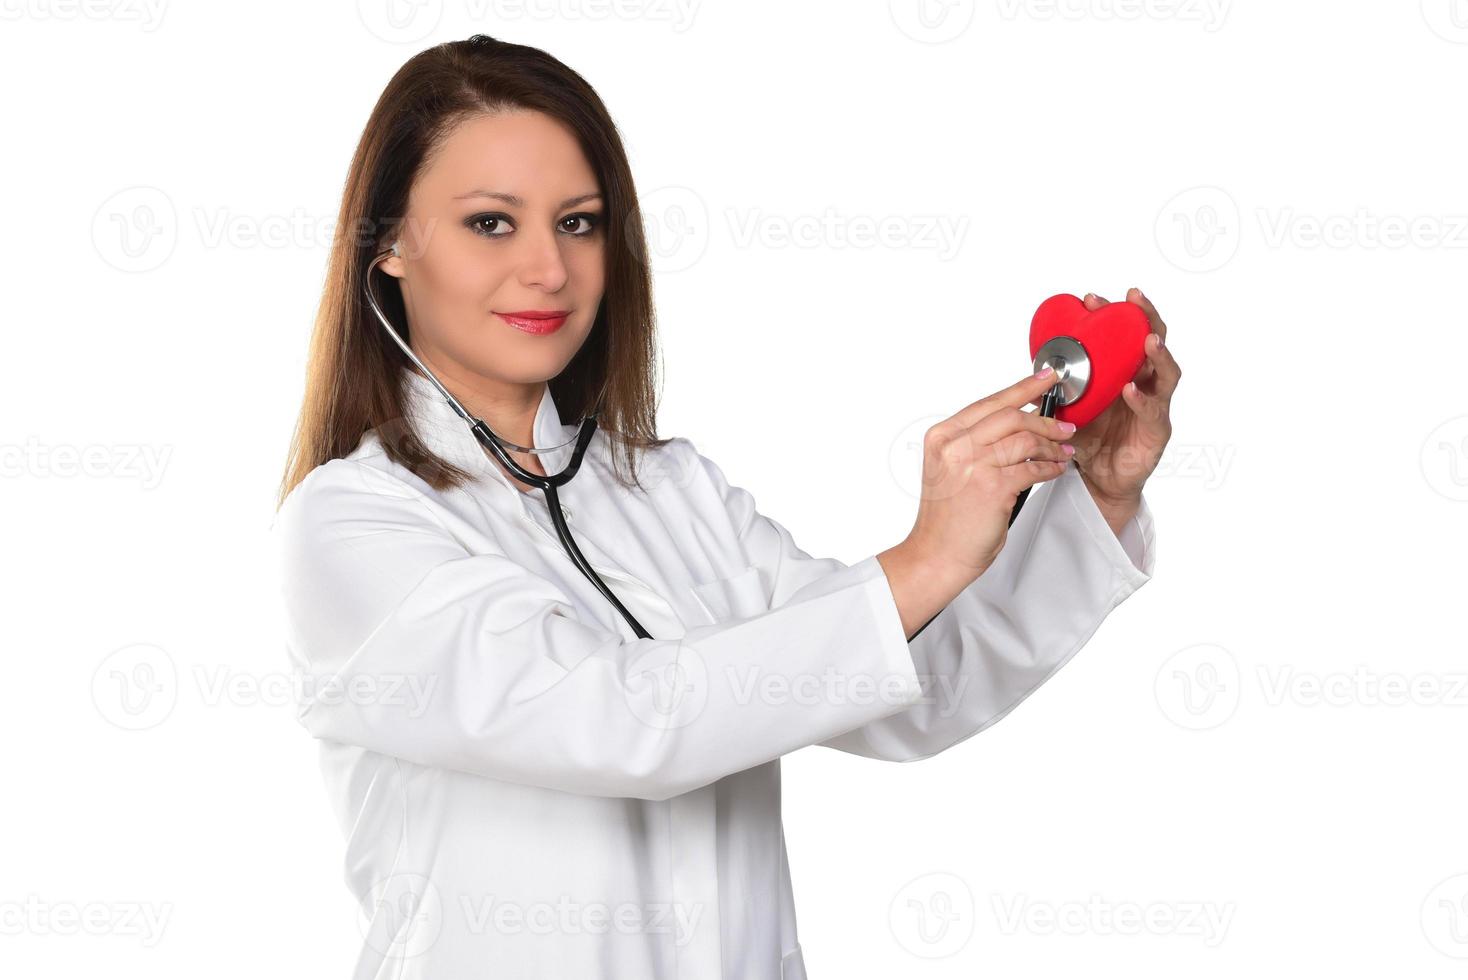 konditionsträning hjärta kirurg händer innehav röd hjärta form på vit bakgrund foto